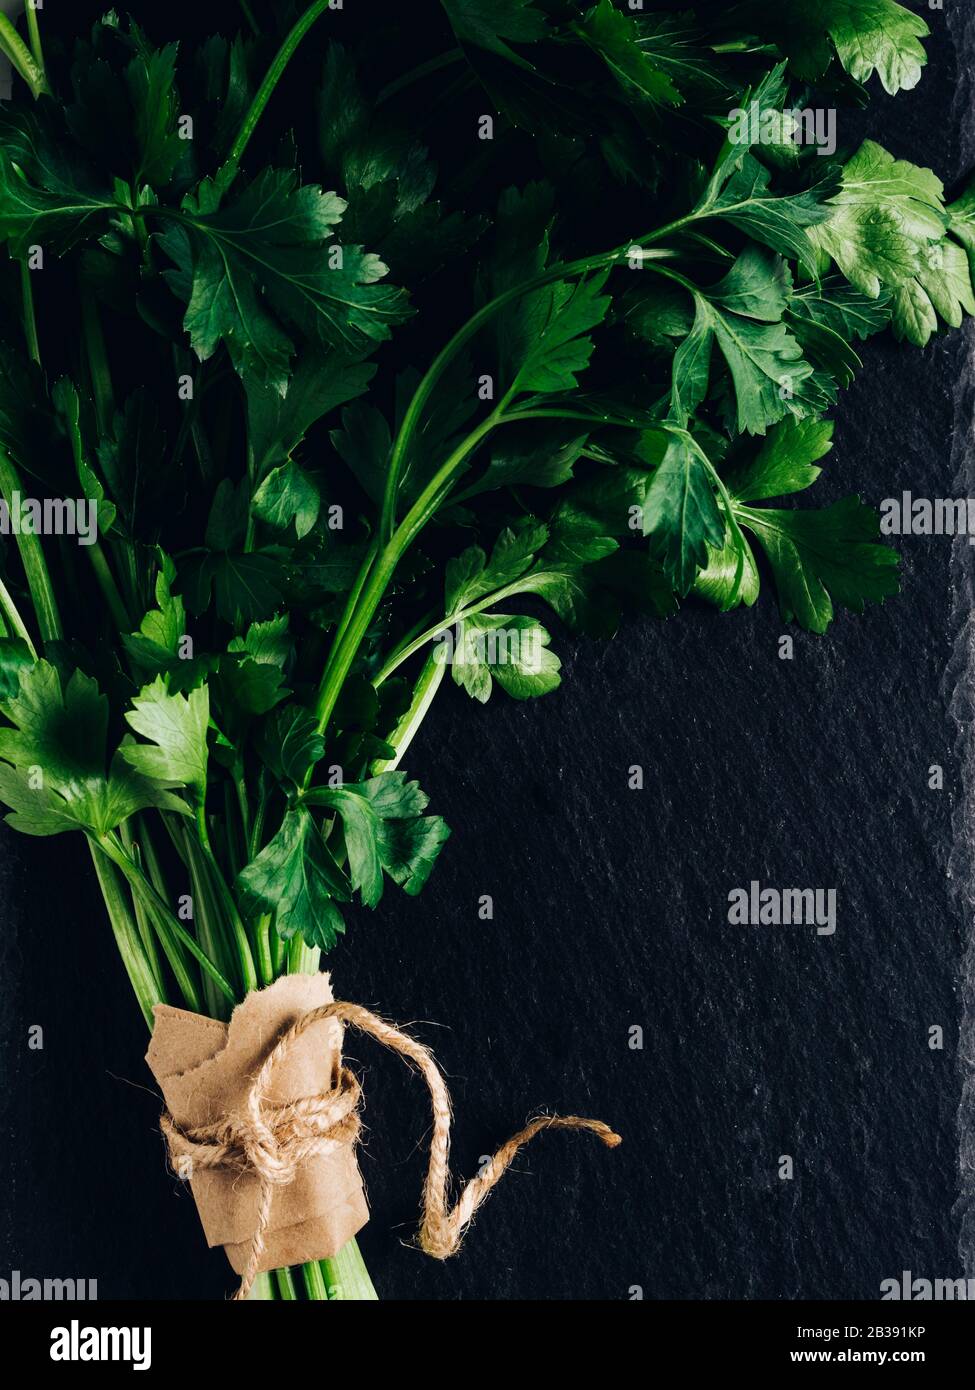 Frische Petersilie. Bund Petersilie, grünes organisches Kraut. Pflanzliche Zutat für gesunde, leckere Speisen Stockfoto